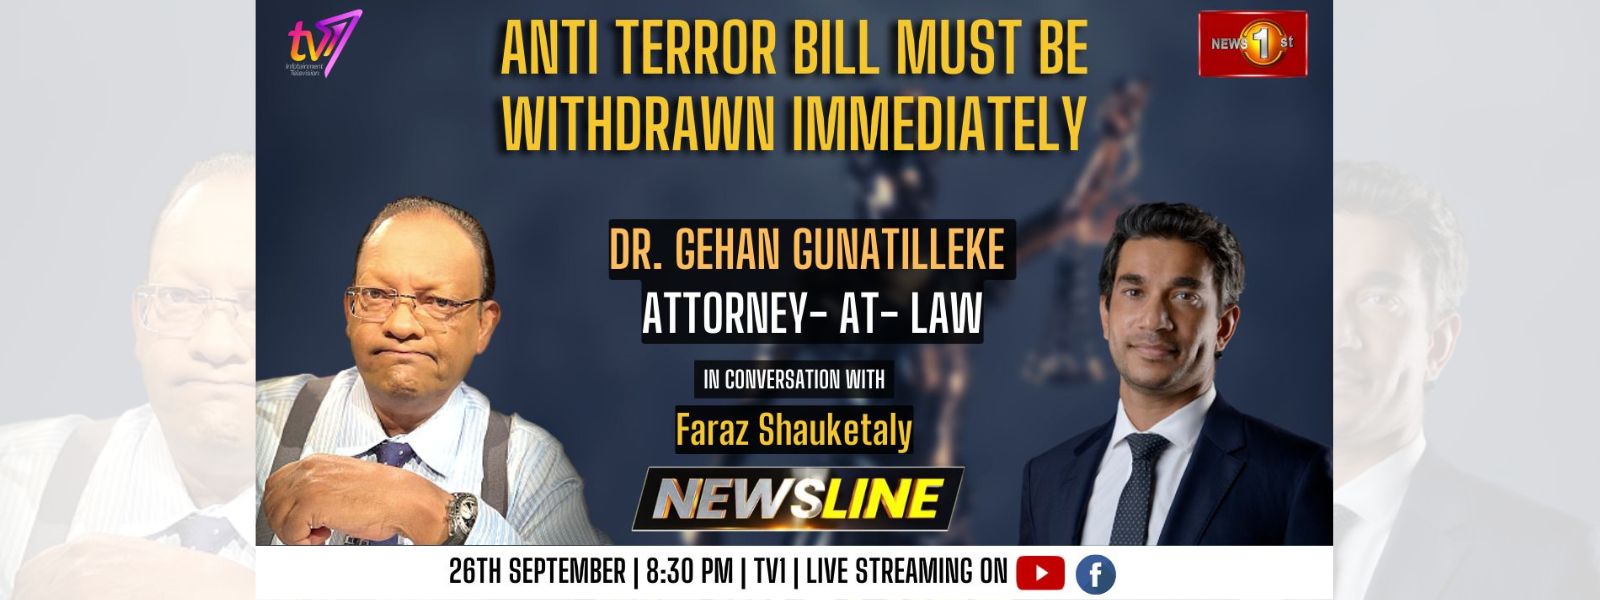 Anti Terror Bill must be withdrawn immediately – Dr. Gehan Gunatilleke on NEWSLINE